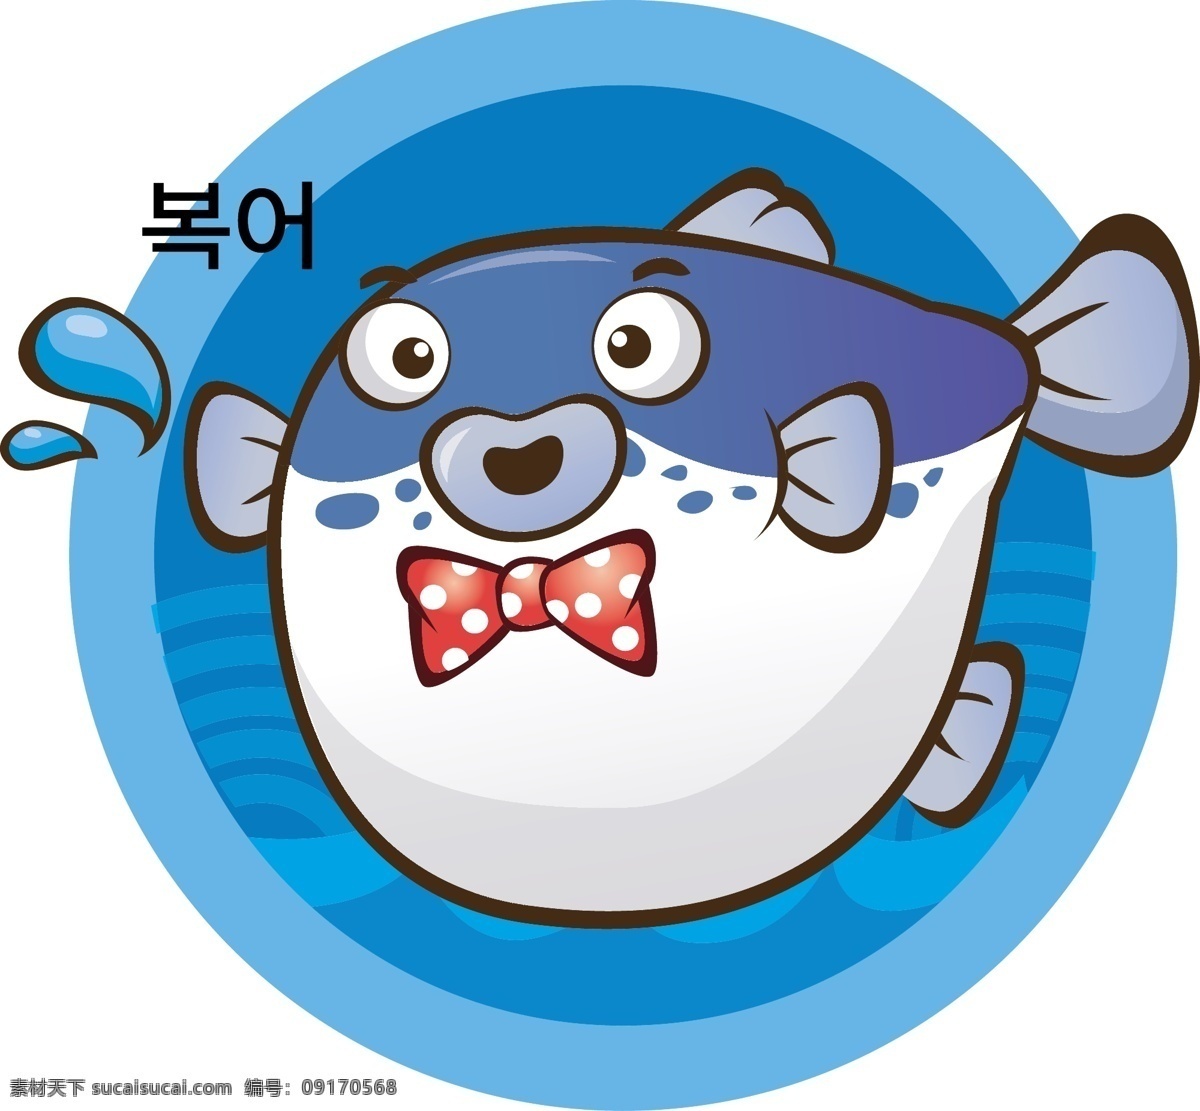 卡通 河豚 矢量图 可爱 蓝色 鱼 海鲜 生物世界 鱼类 矢量图库 卡通动物 卡通设计 矢量